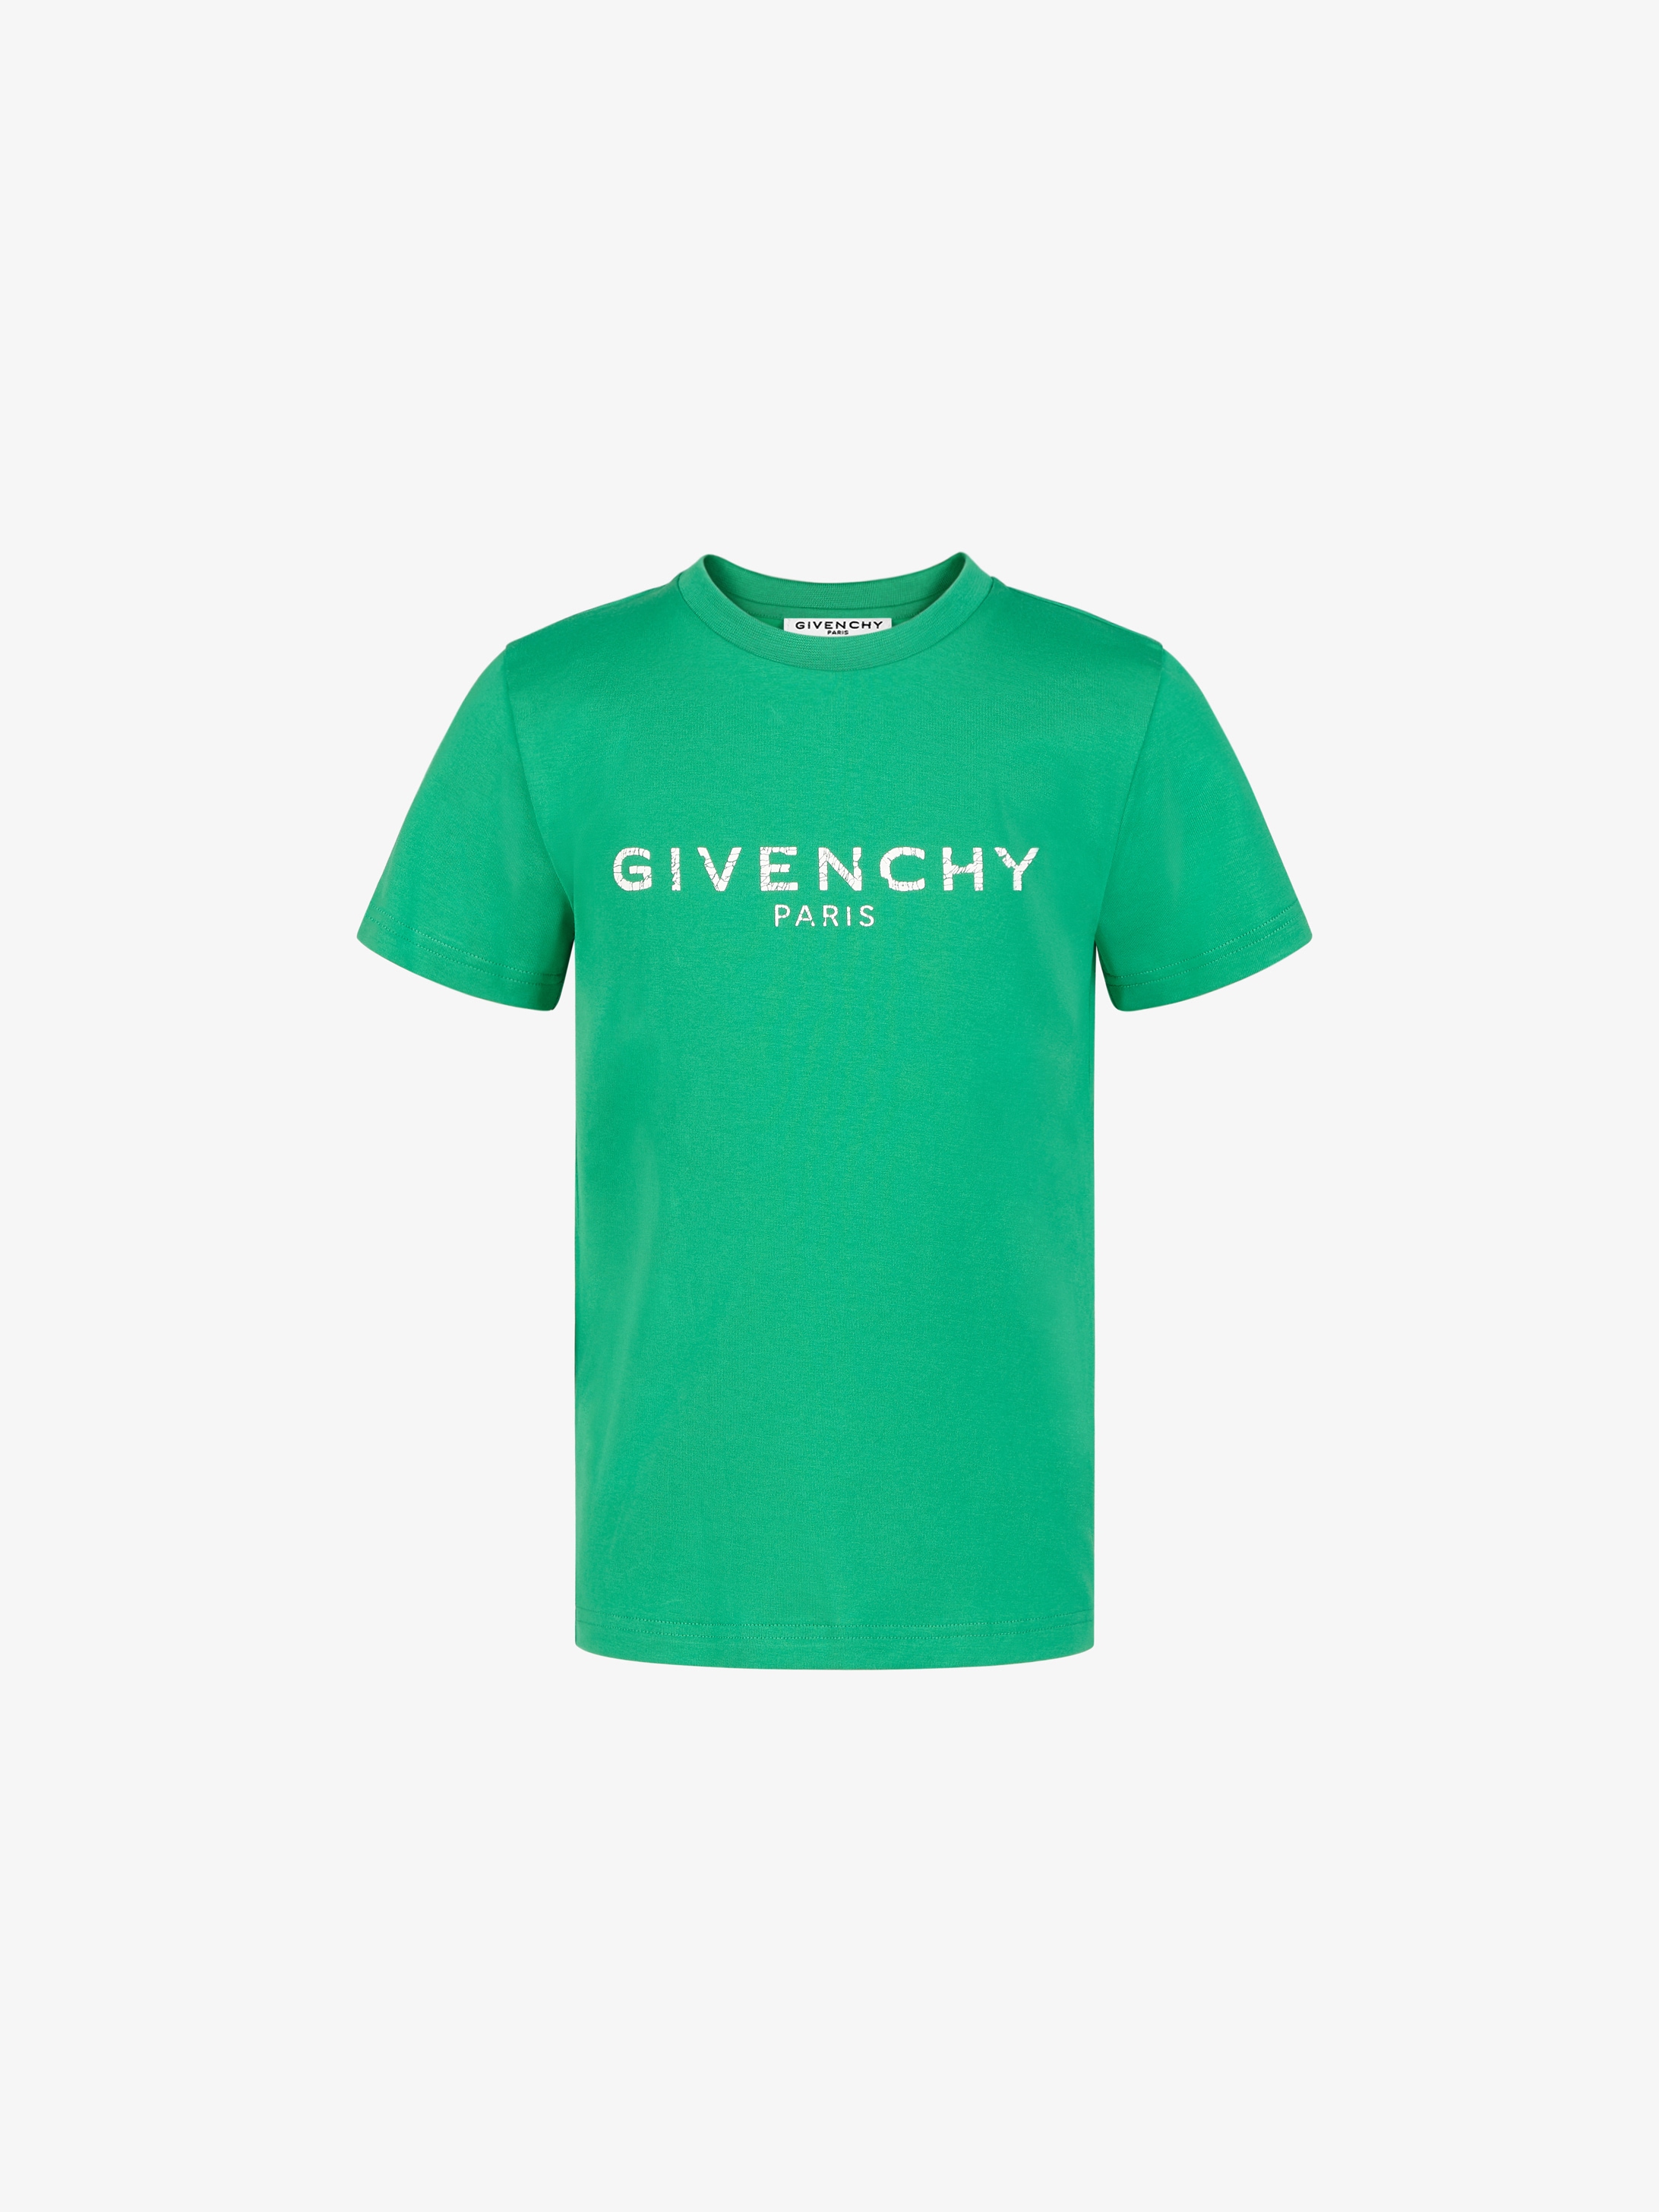 givency shirt